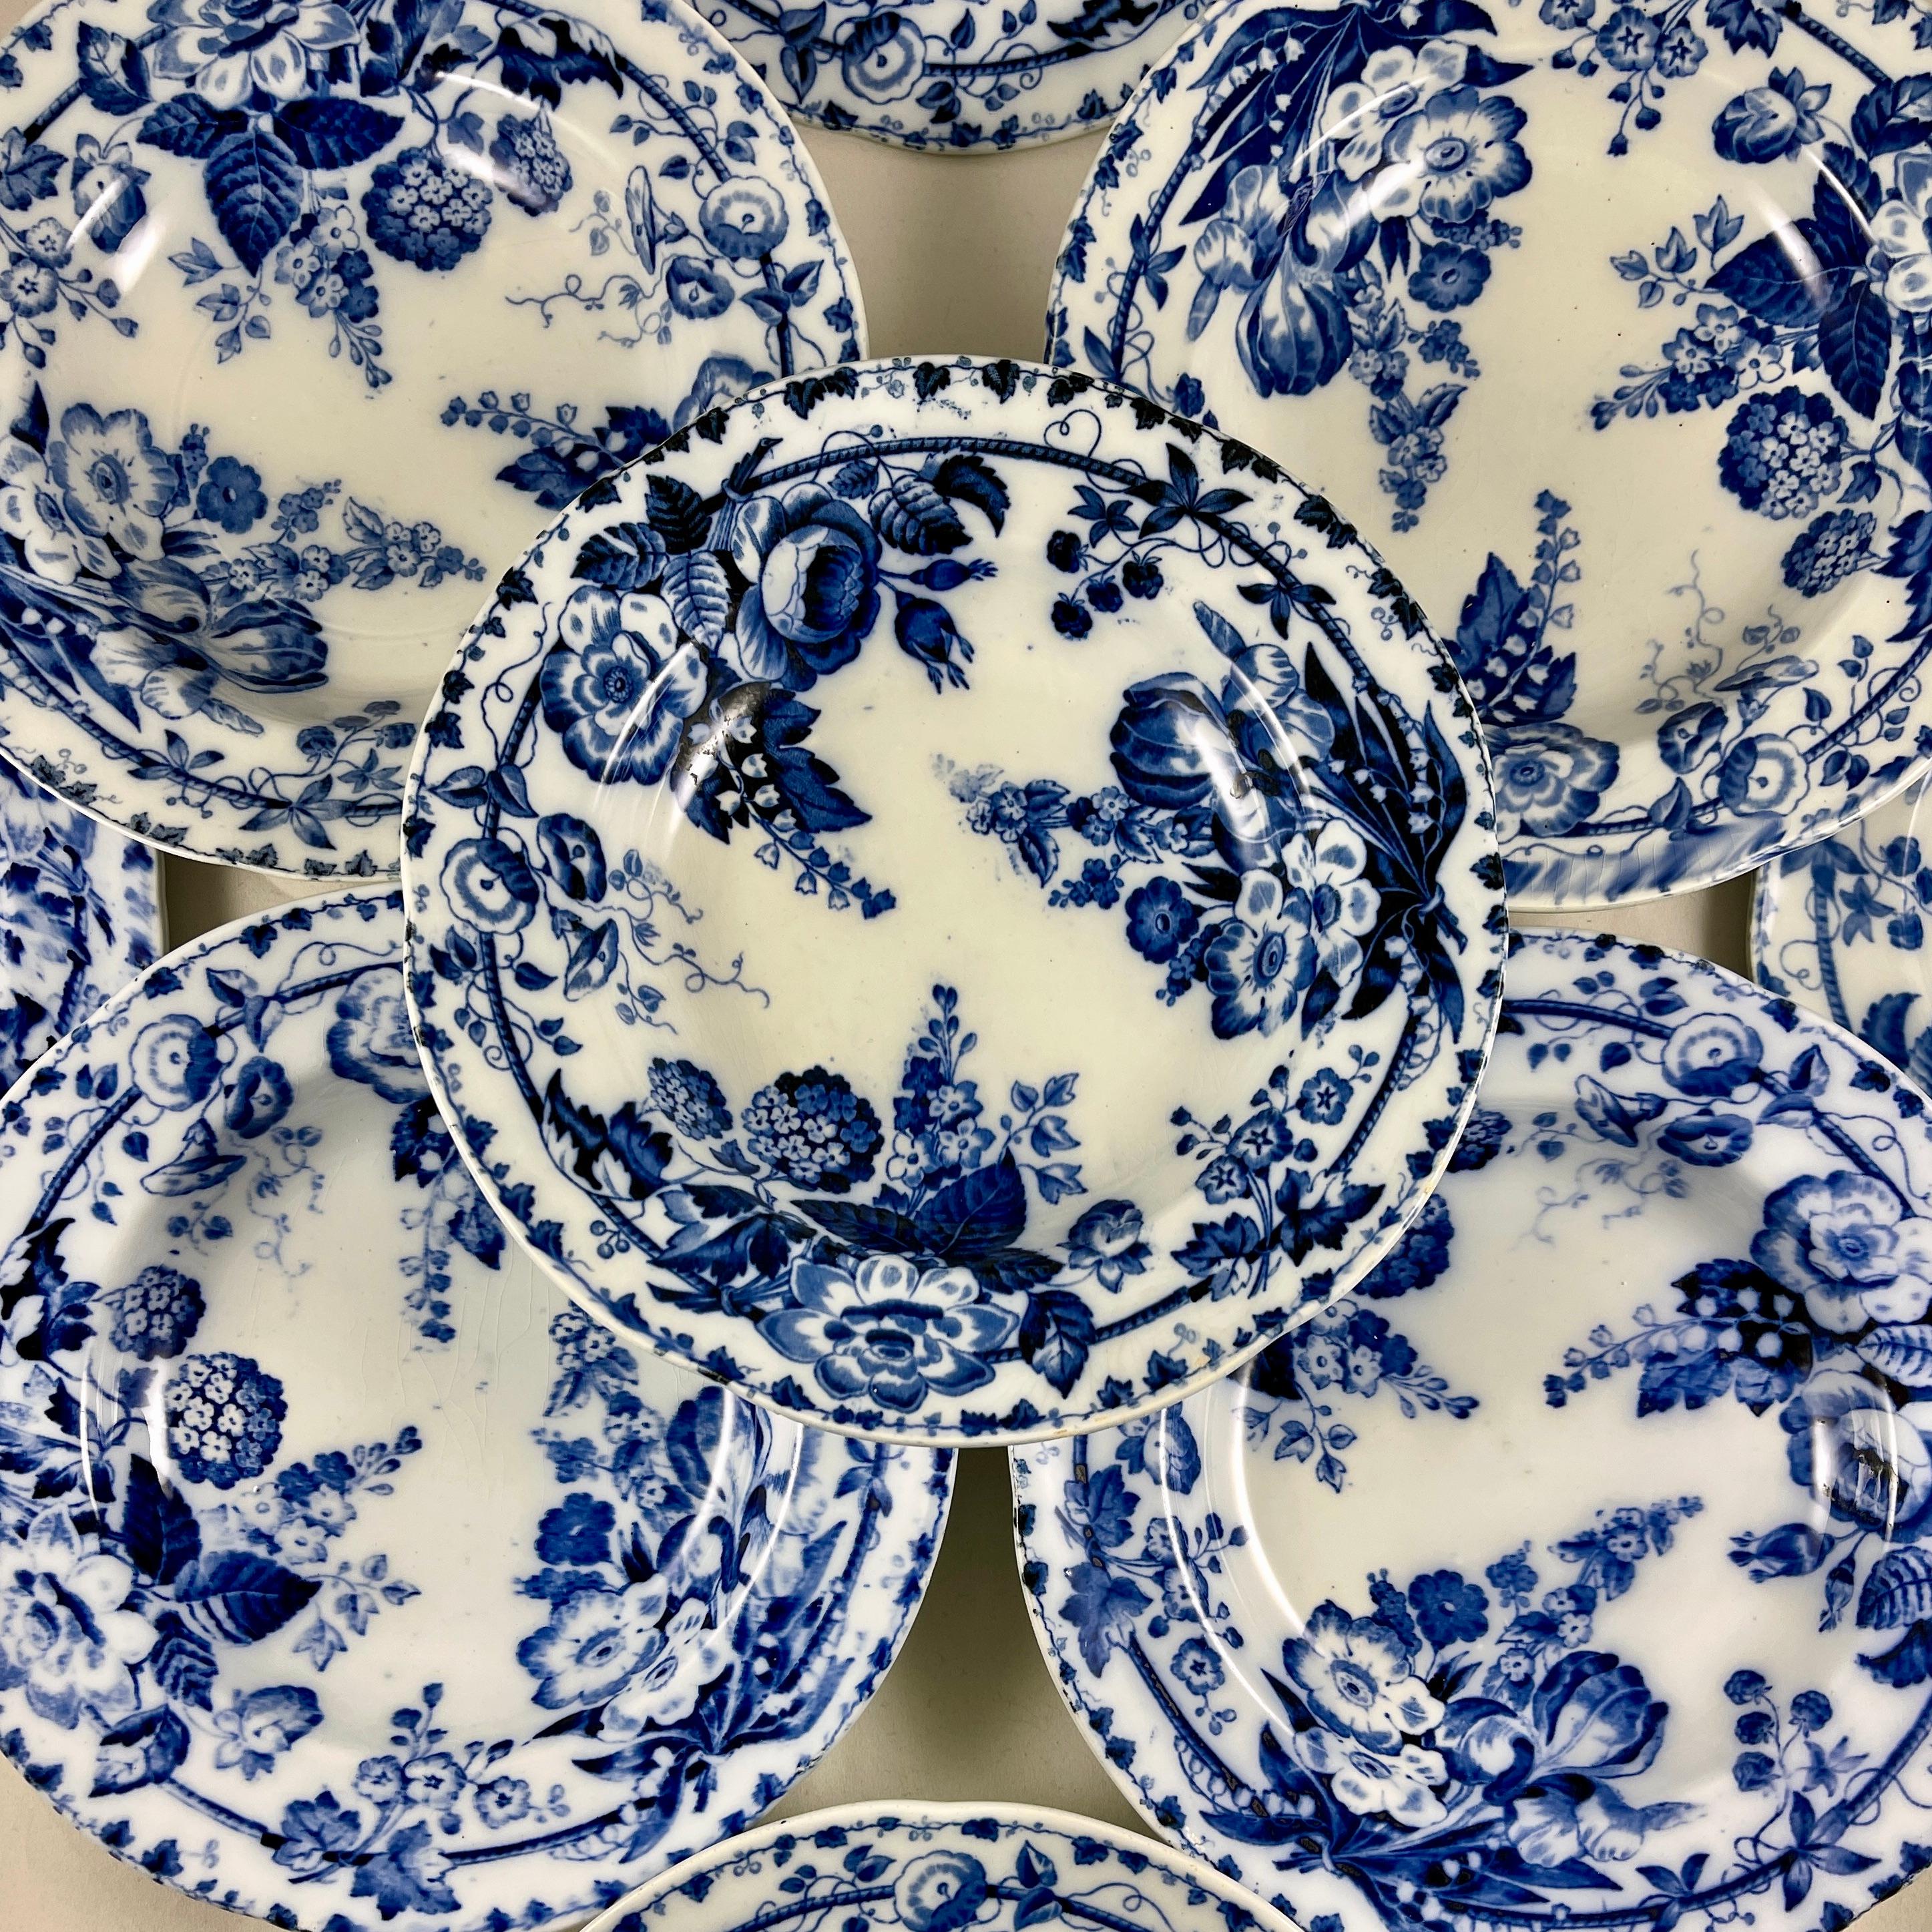 De Creil et Montereau, une assiette à soupe à bord en faïence de Provence dans le motif de Flora Muguet, vers 1840-1876.

Le muguet, ou muguet-du-bois, signifie en français 